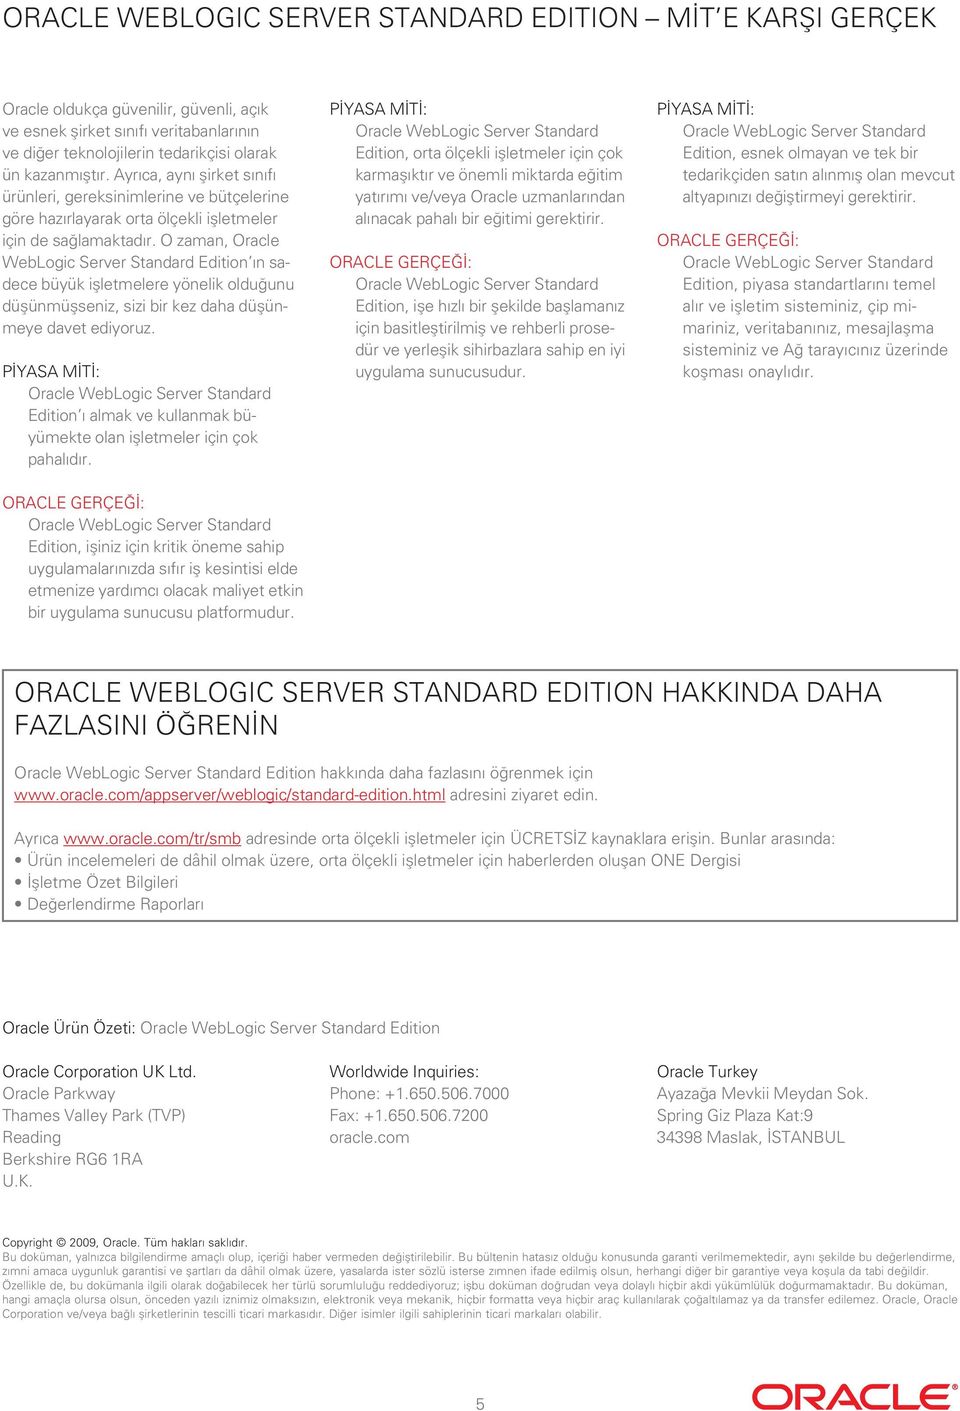 O zaman, Oracle WebLogic Server Standard Edition ın sadece büyük işletmelere yönelik olduğunu düşünmüşseniz, sizi bir kez daha düşünmeye davet ediyoruz.